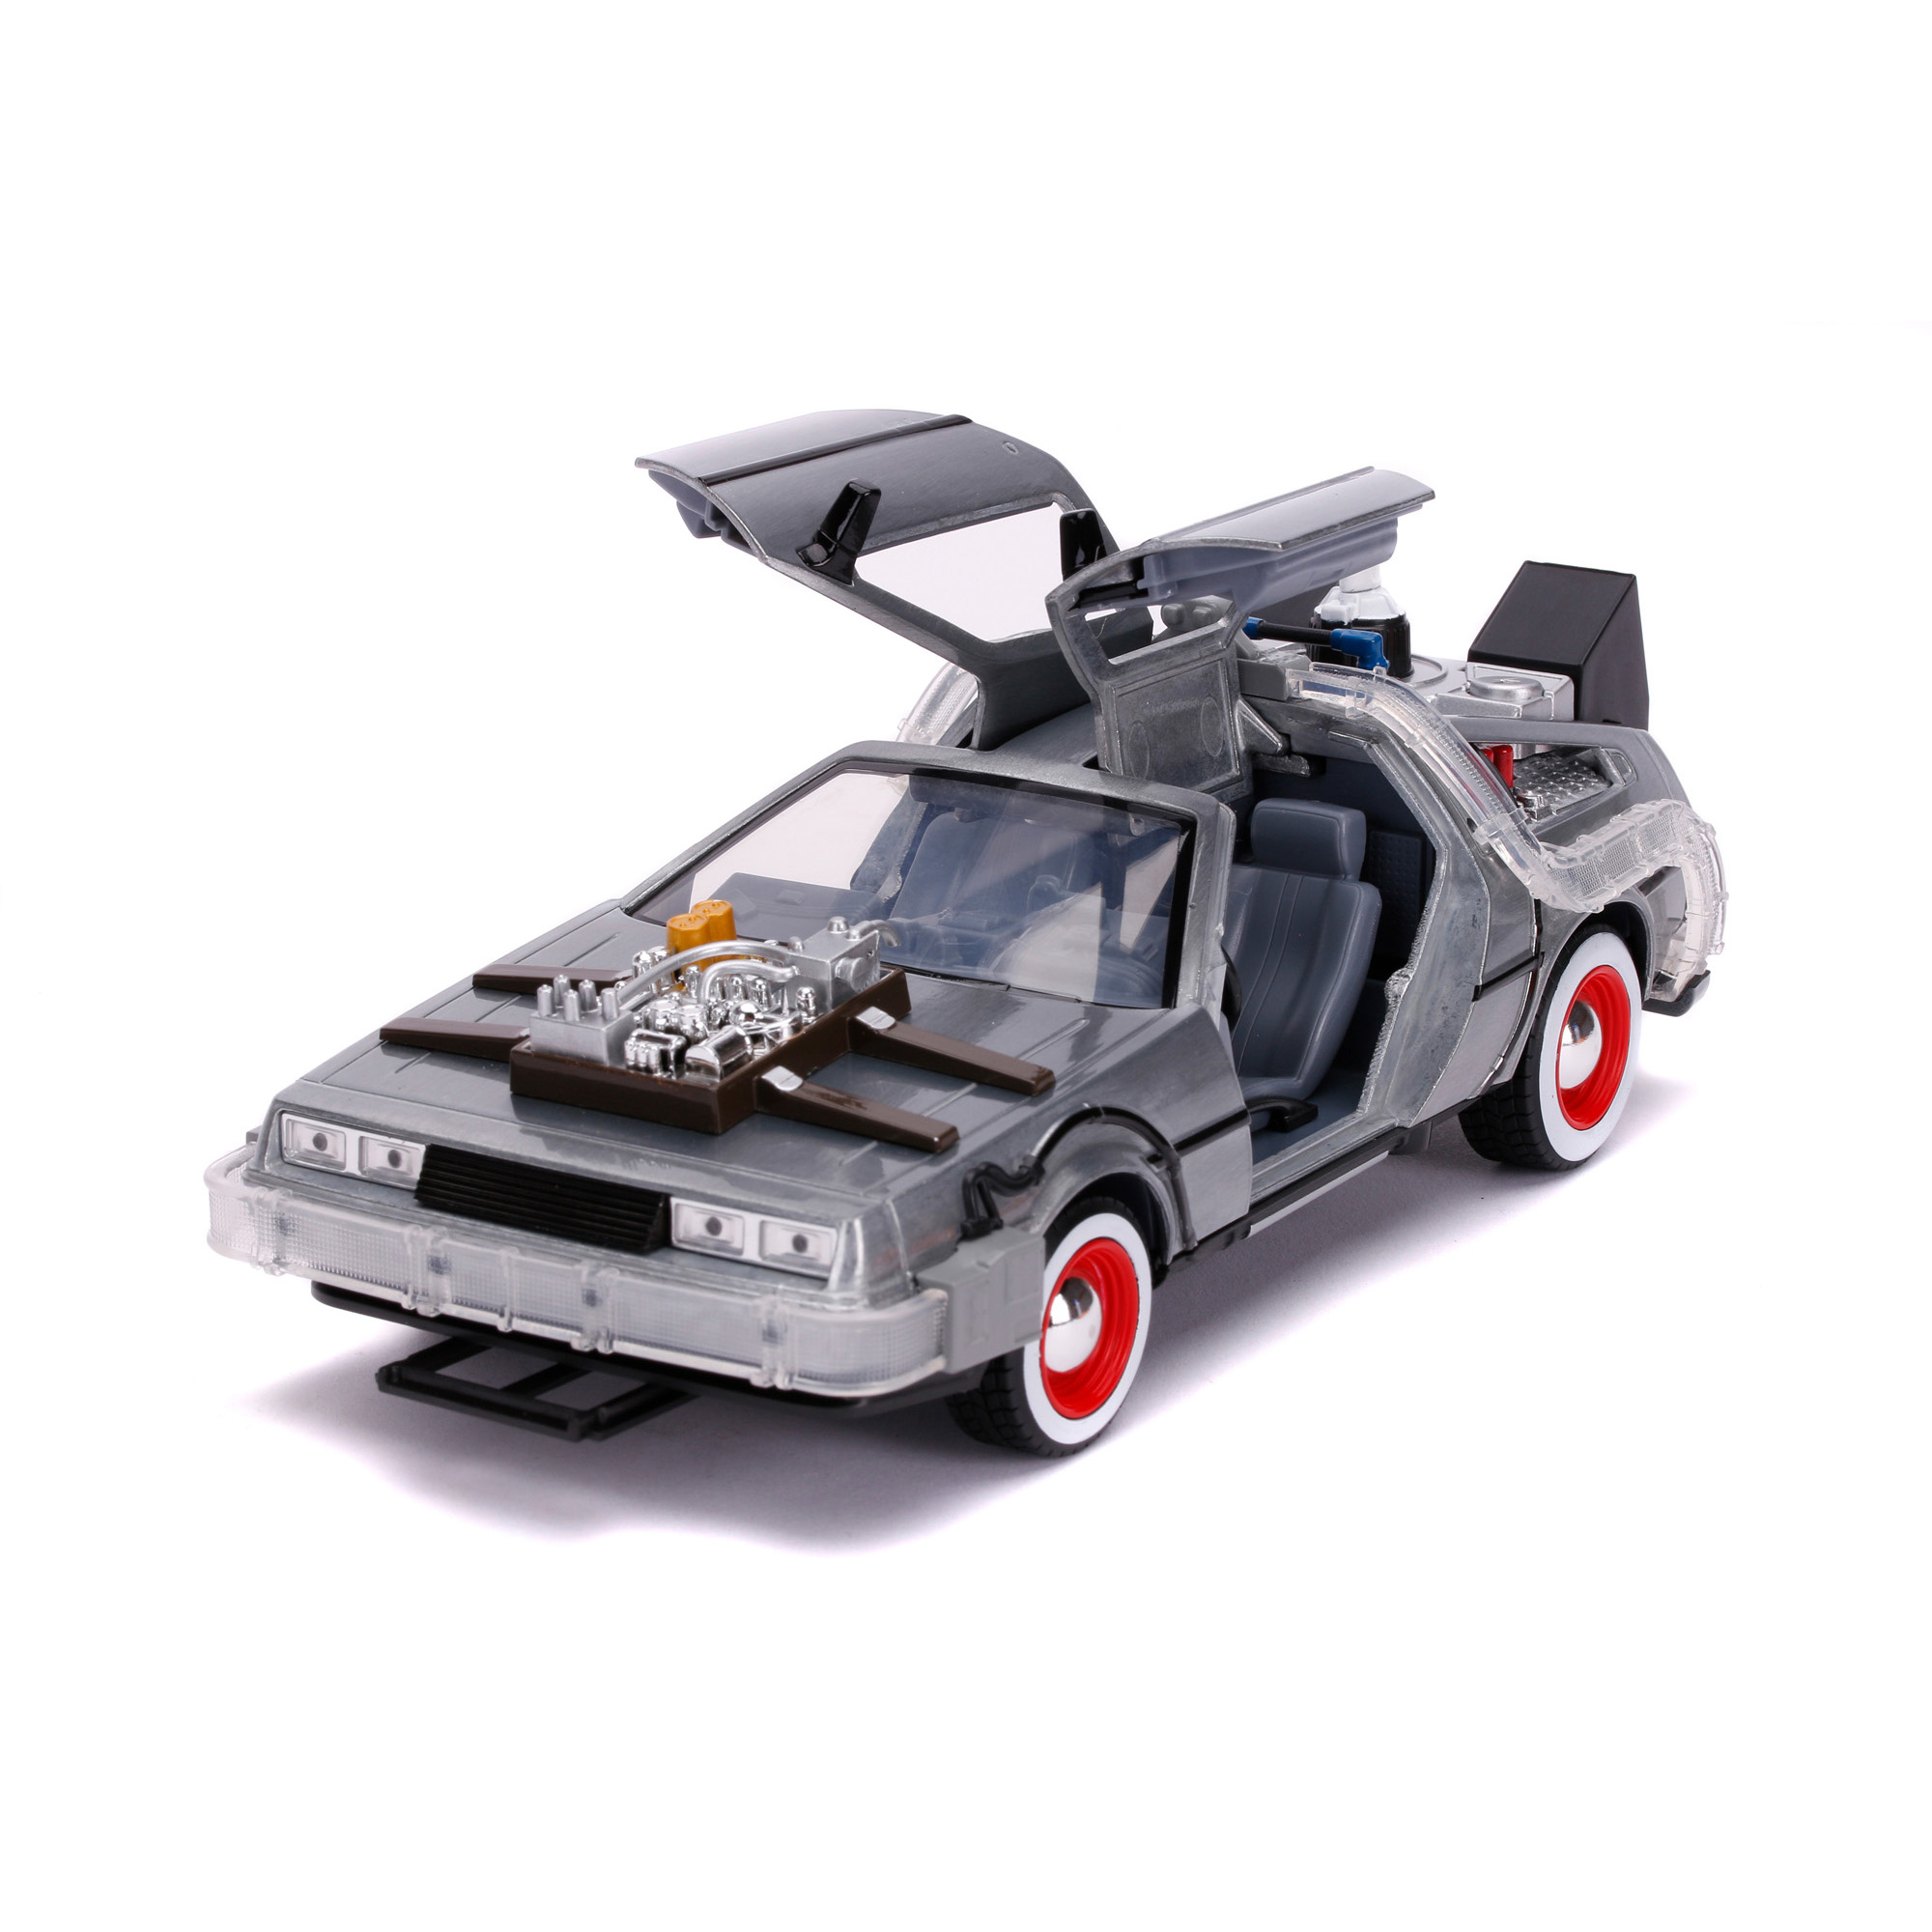 DeLorean (Ritorno al Futuro 3) Time Machine scala 1:24 - Jada